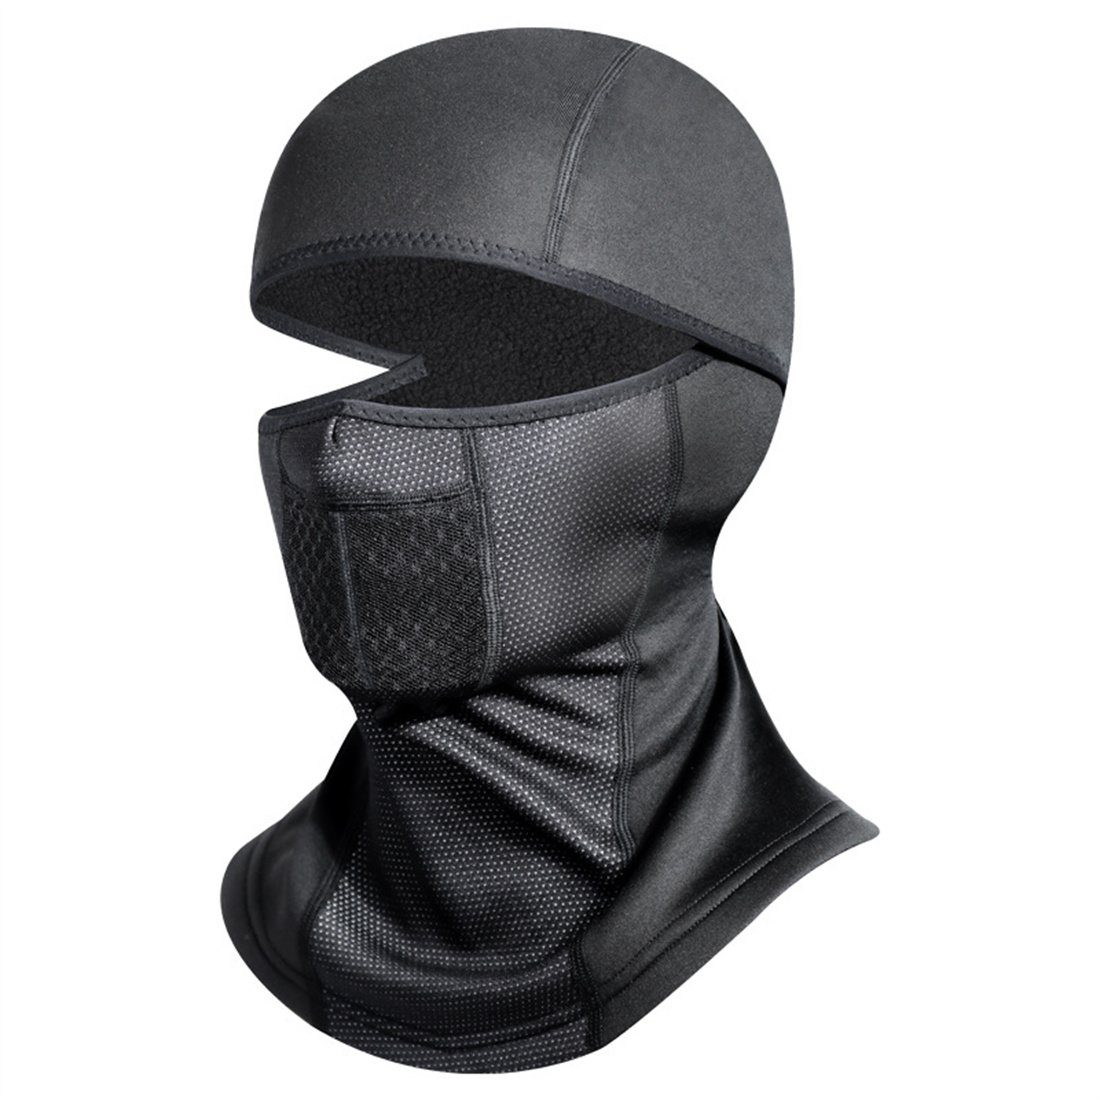 DÖRÖY Winter-Skimaske, Sturmhaube Gesichtsschutzmaske für Radfahrer, Warme unisex